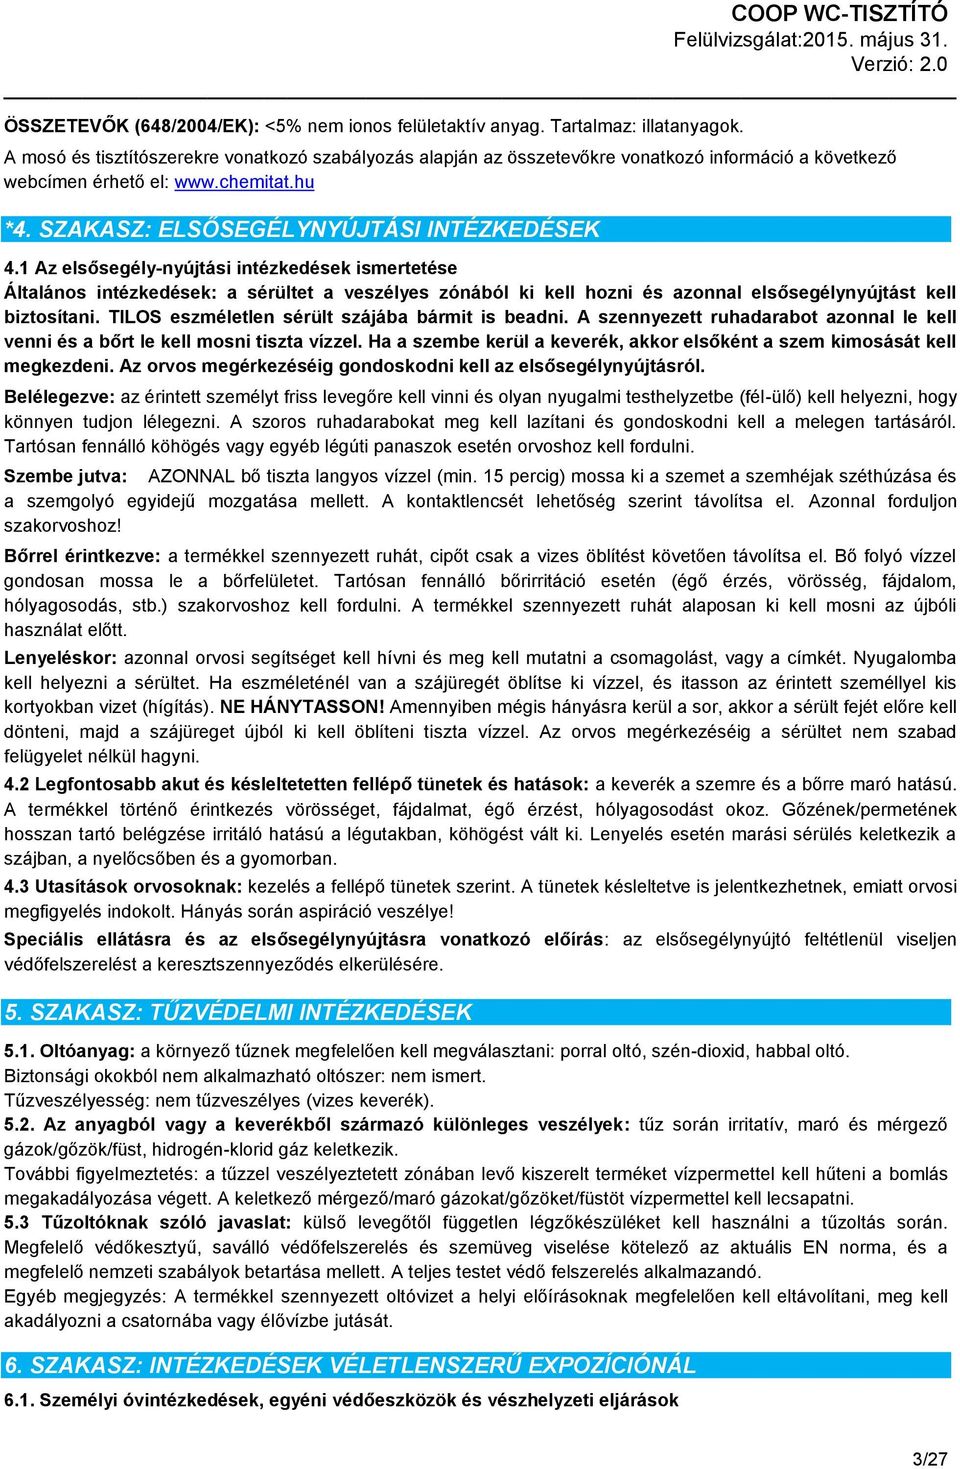 BIZTONSÁGI ADATLAP (453/2010 EU rendelet II. melléklete alapján) - PDF  Ingyenes letöltés